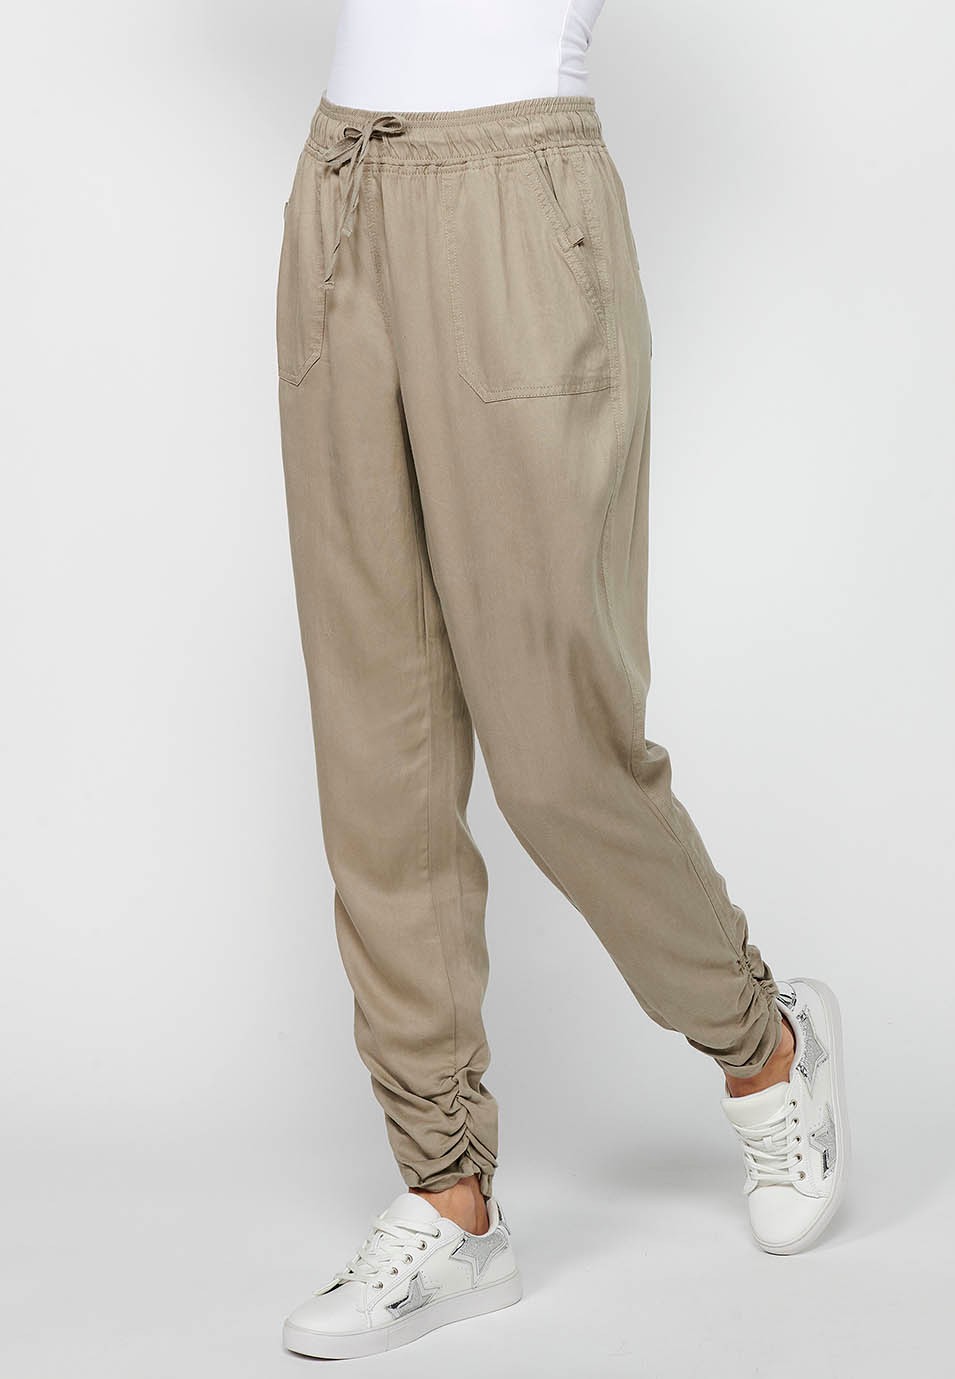 Pantalon de jogging long finition bouclée et taille caoutchoutée avec quatre poches, deux poches arrière à rabat en Gris pour Femme 1